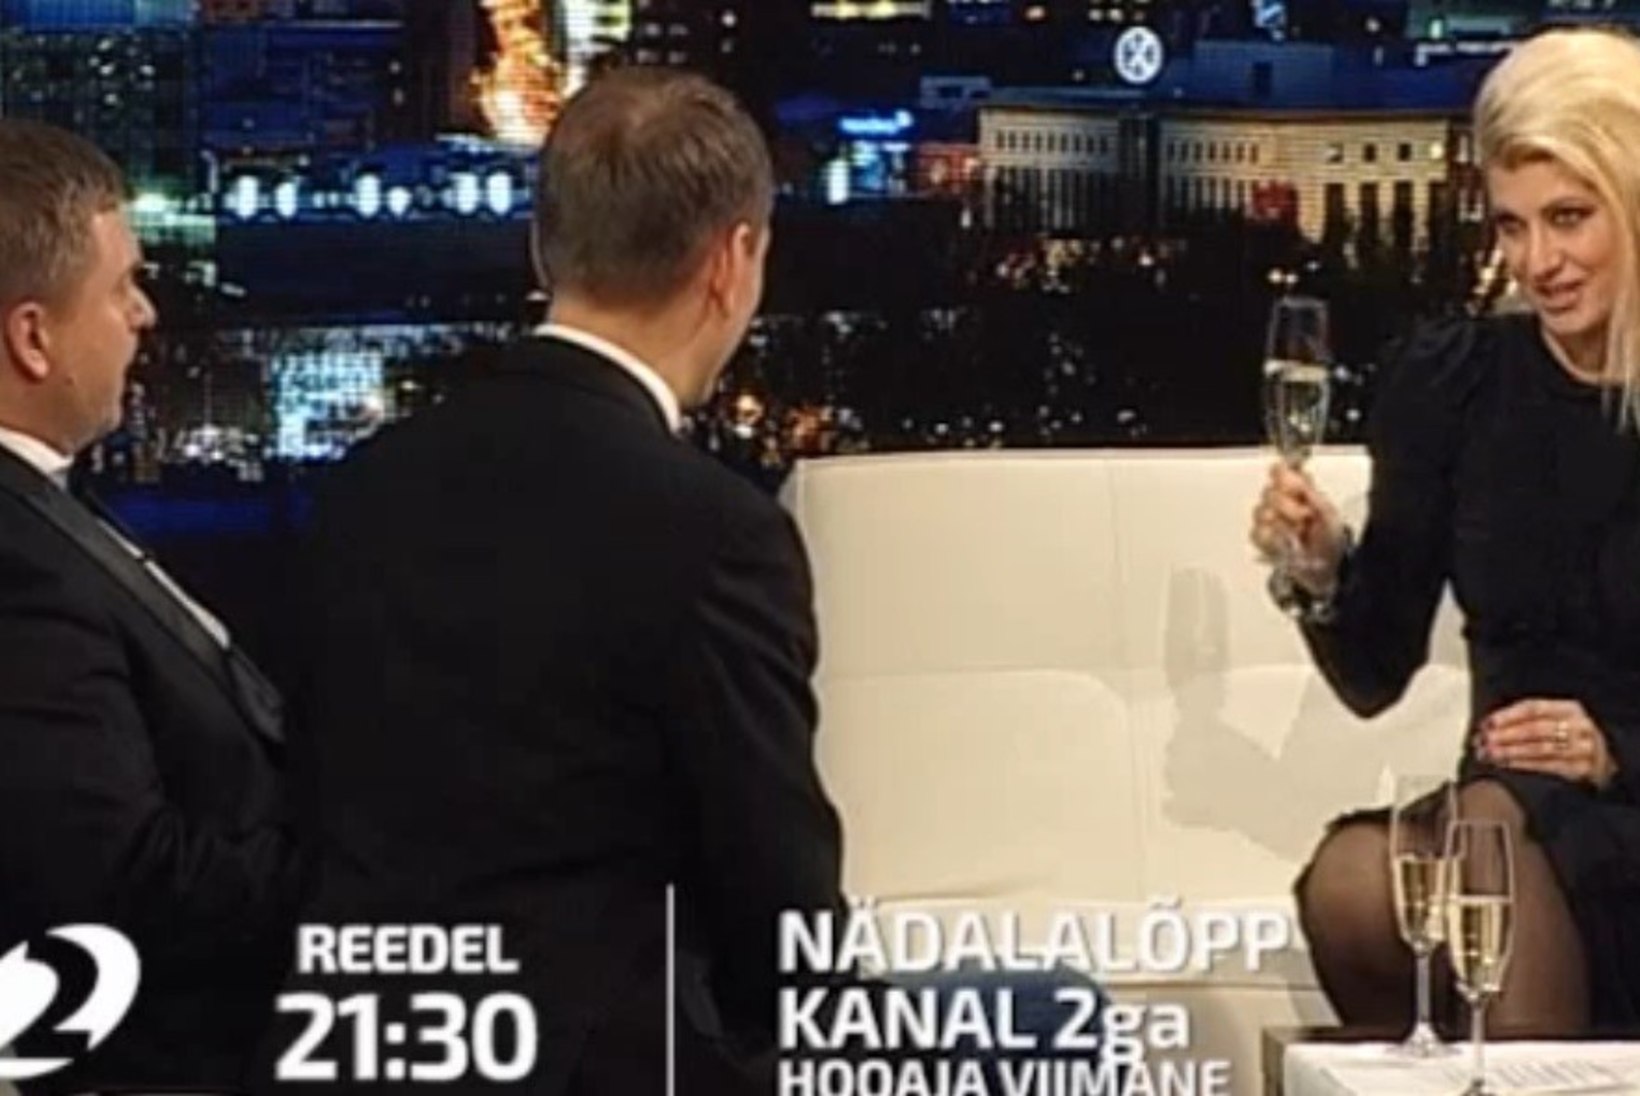 "Nädalalõpp Kanal 2ga" täna: koos ajakirjanik Viktoria Ladõnskajaga pannakse paika eesti ja vene rahvuse eripärad!